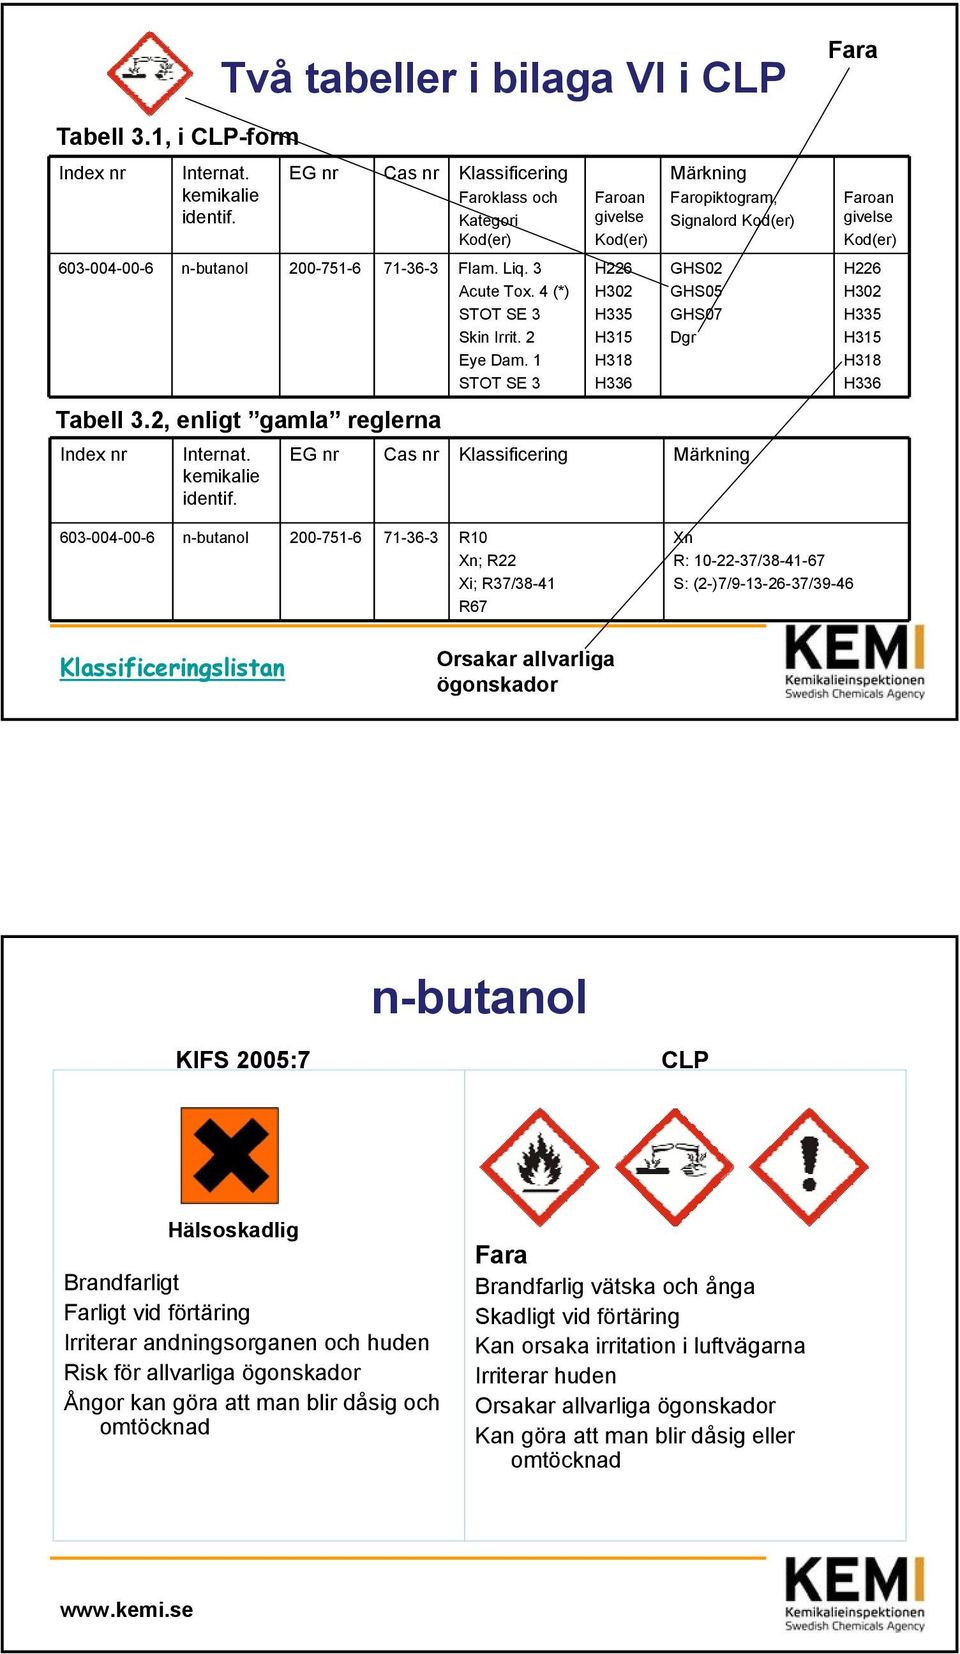 2, enligt gamla reglerna Internat. kemikalie identif.